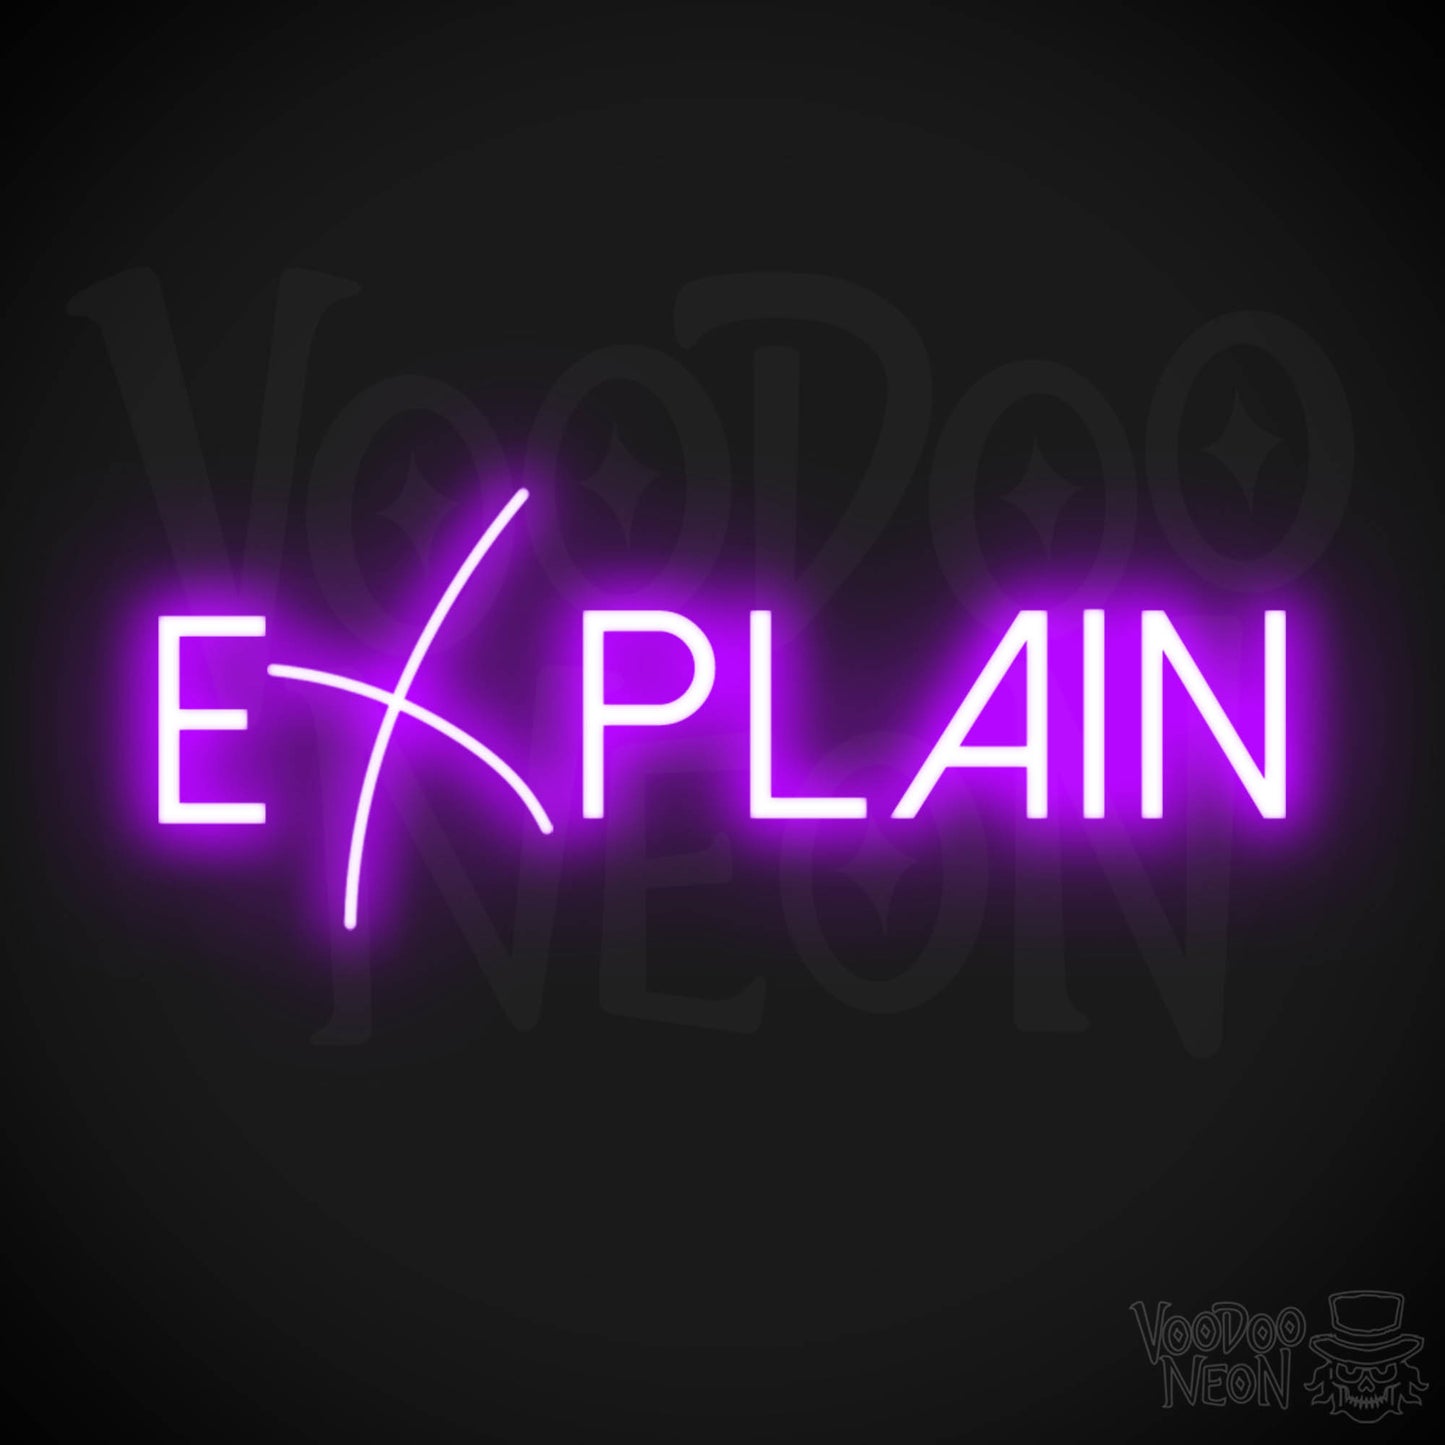 Explain Neon Sign - Neon Explain Sign - Color Purple